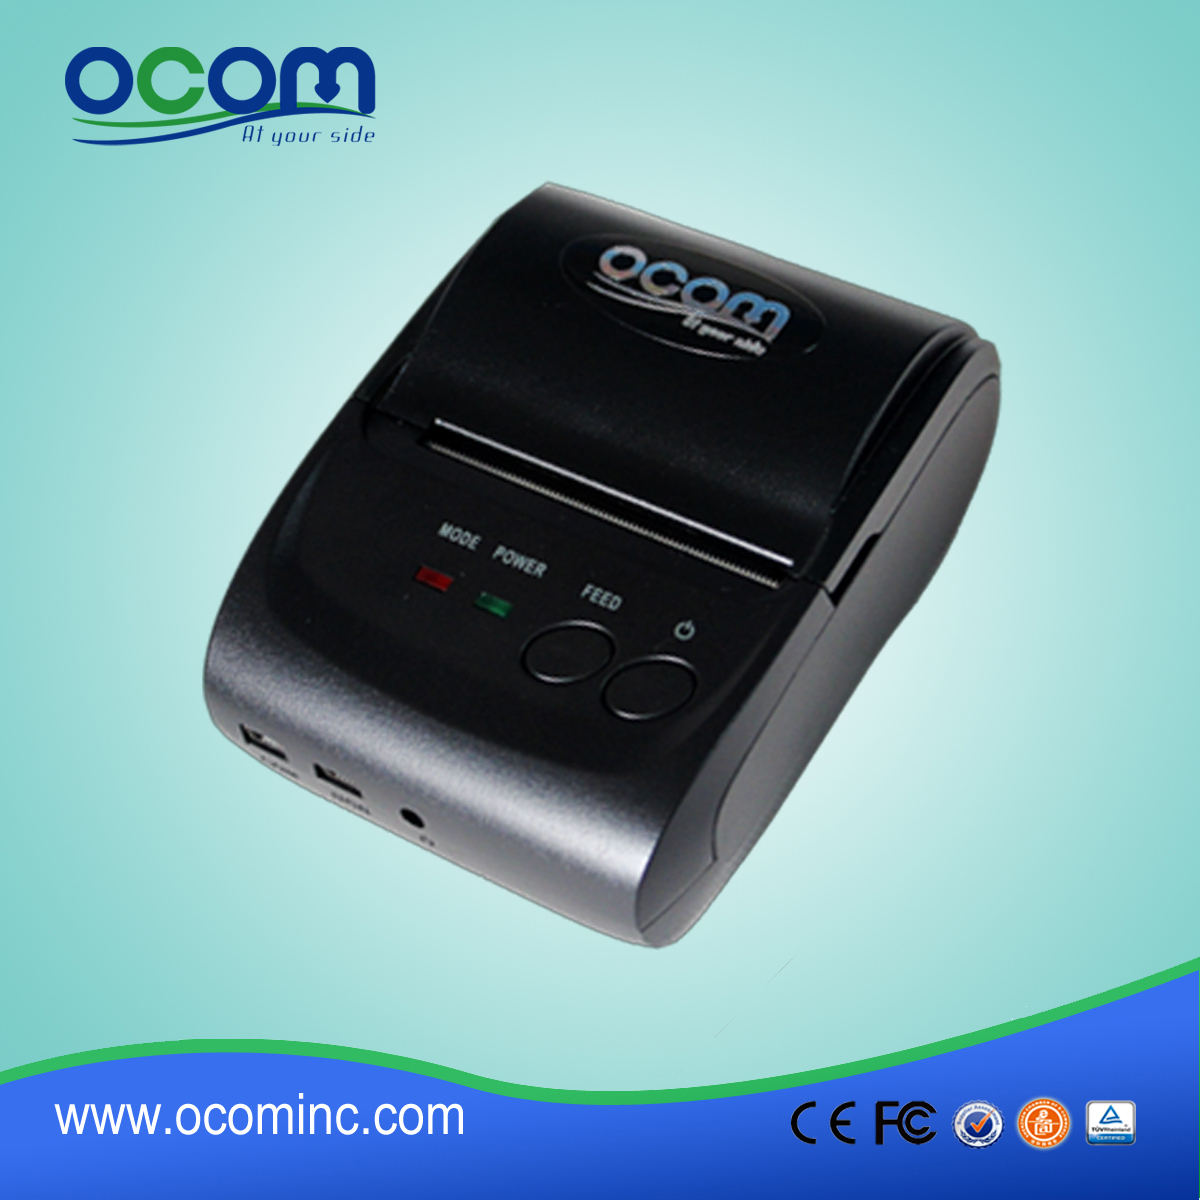 OCPP-M05: 2,015 quente mini-impressora impressora Bluetooth pos, impressora térmica sem fio